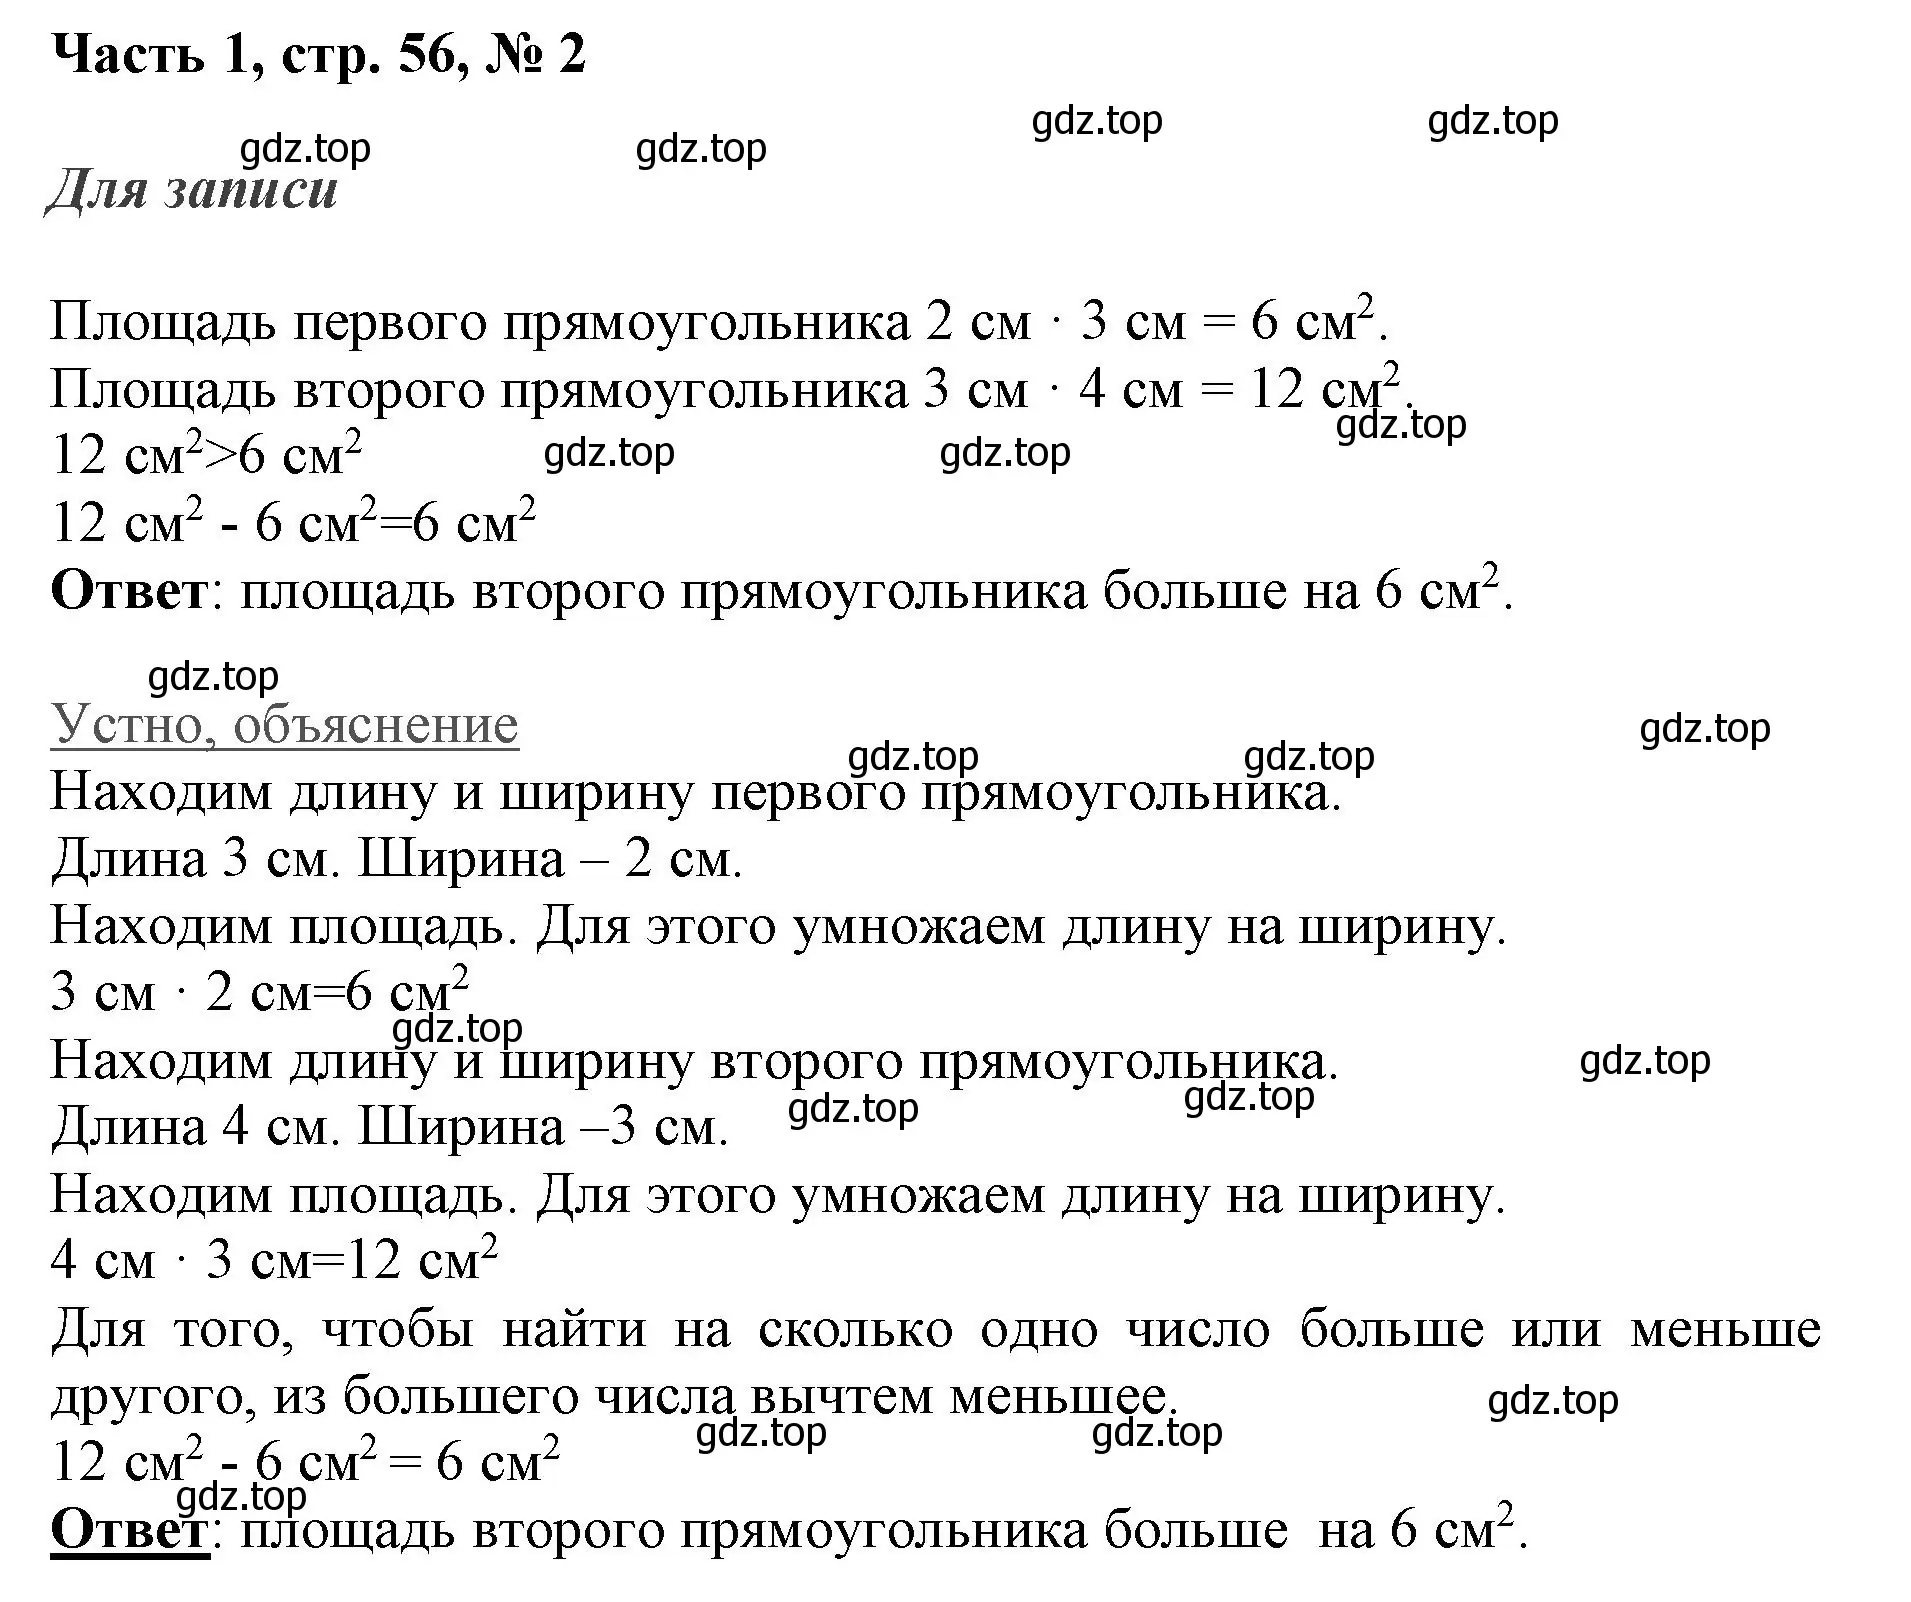 Решение номер 2 (страница 56) гдз по математике 3 класс Моро, Бантова, учебник 1 часть